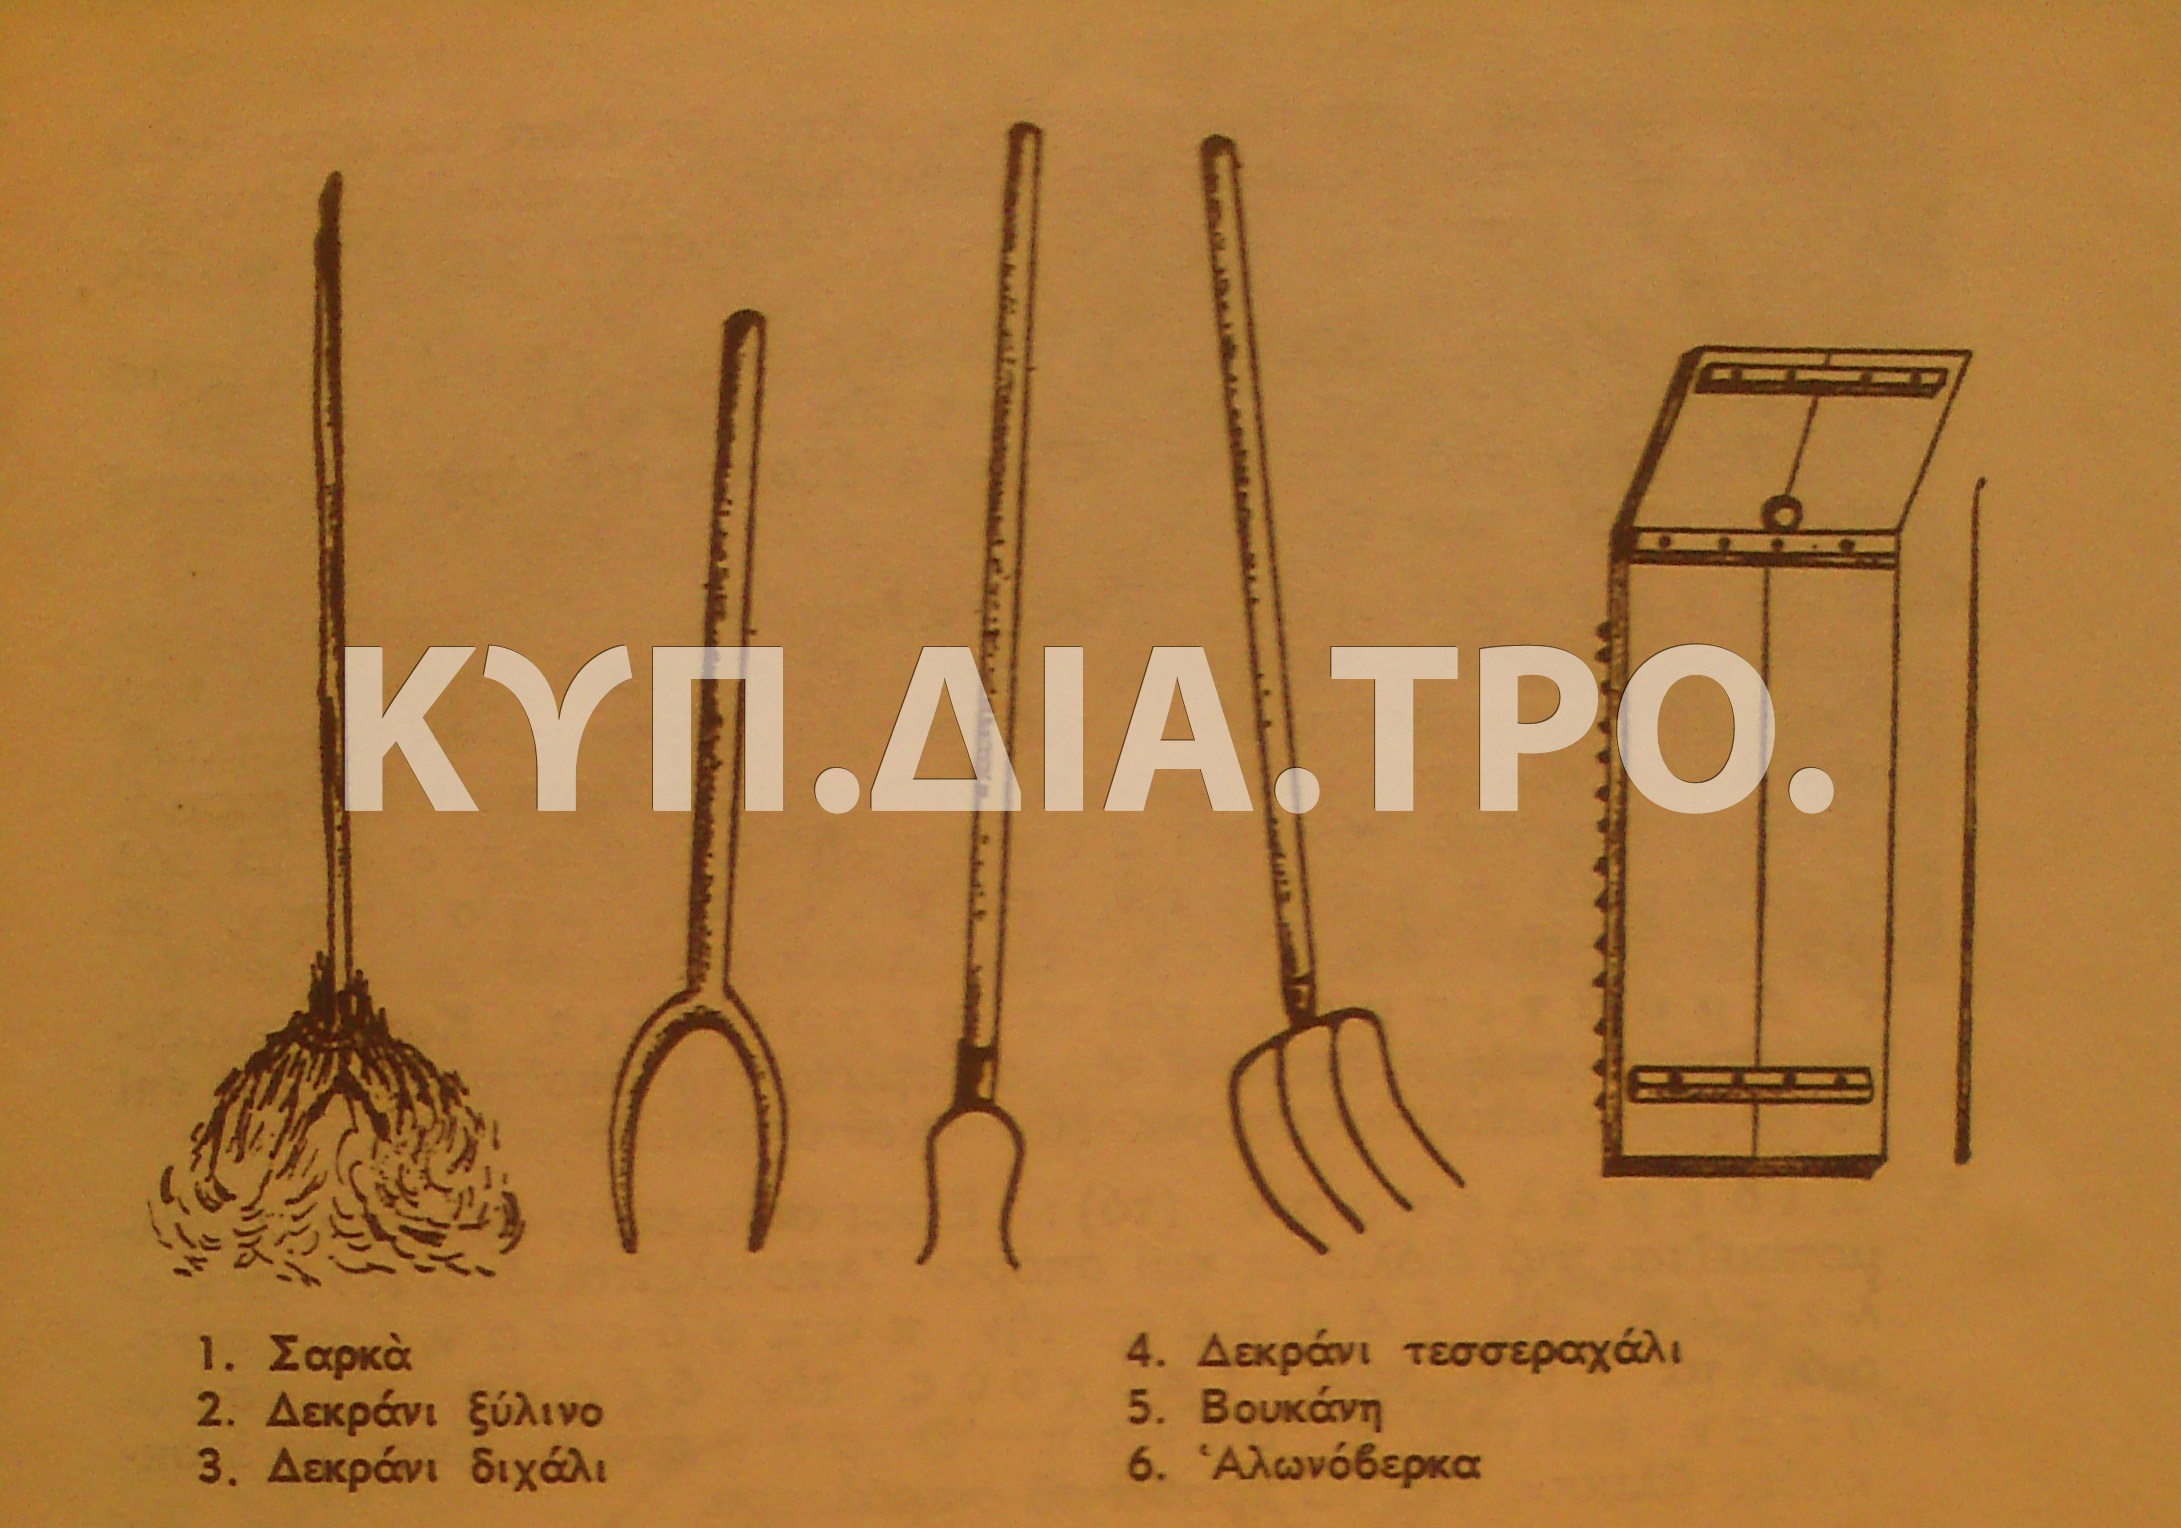 Εργαλεία γεωργού, Ξυστούρης Σ. (1980) 290.